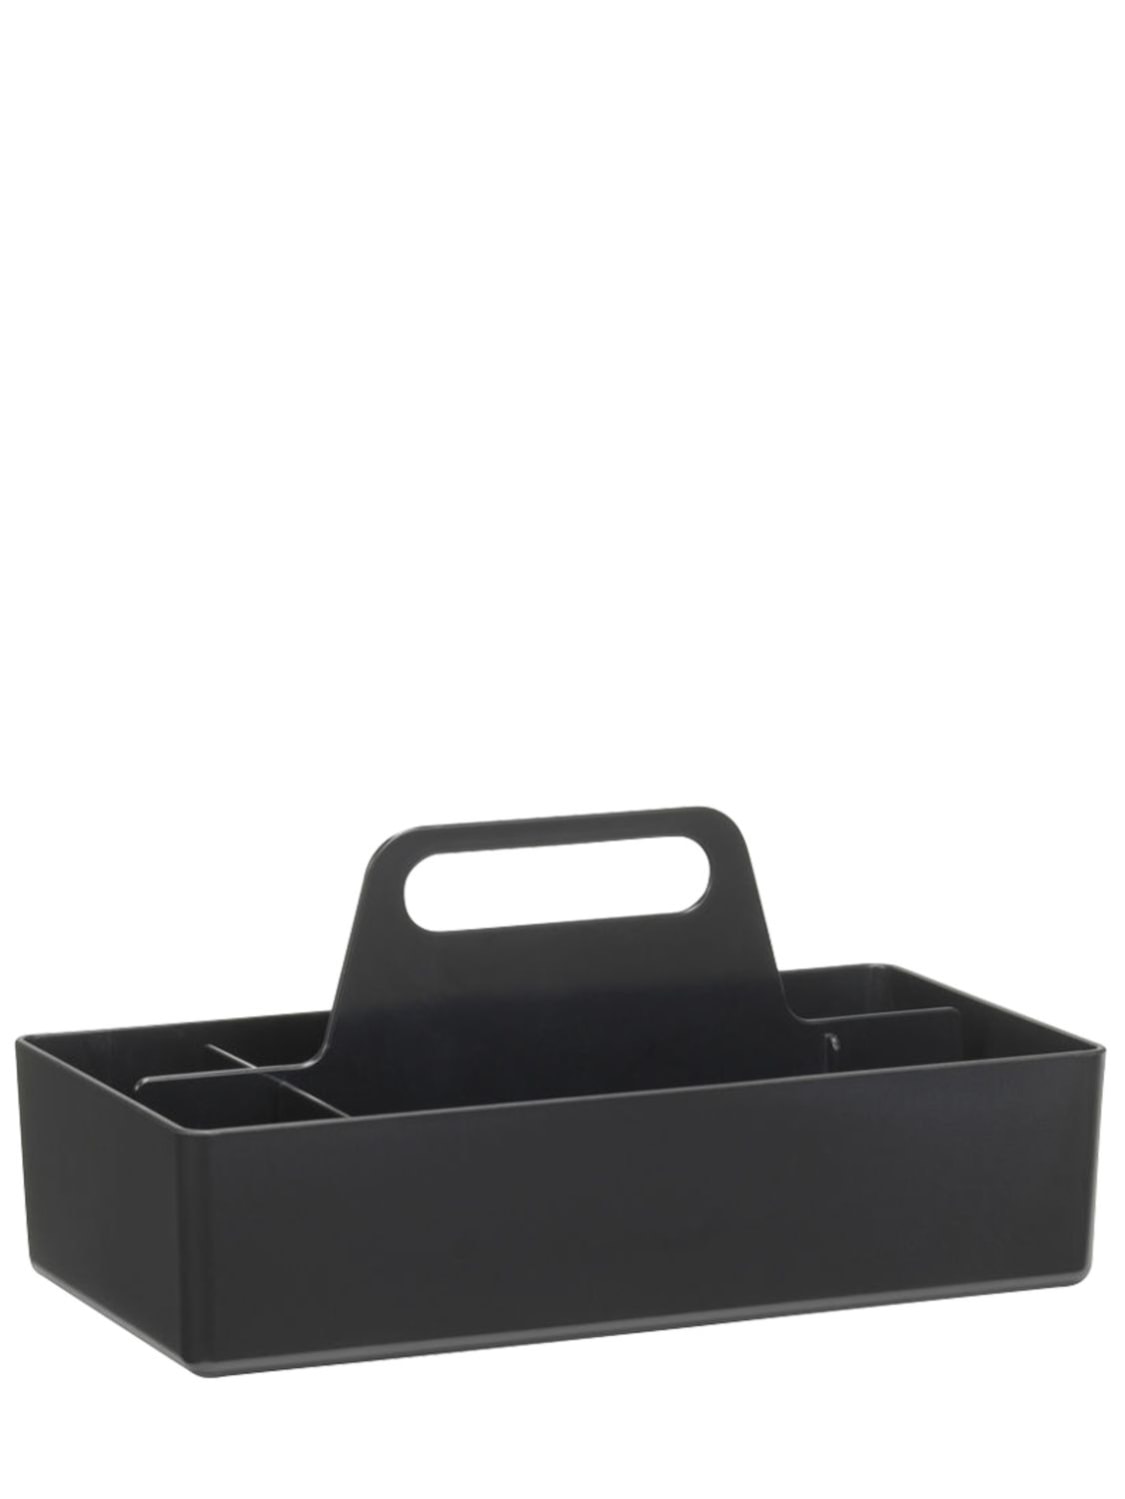 Casa Caja Organizadora Toolbox Unique - VITRA - Modalova